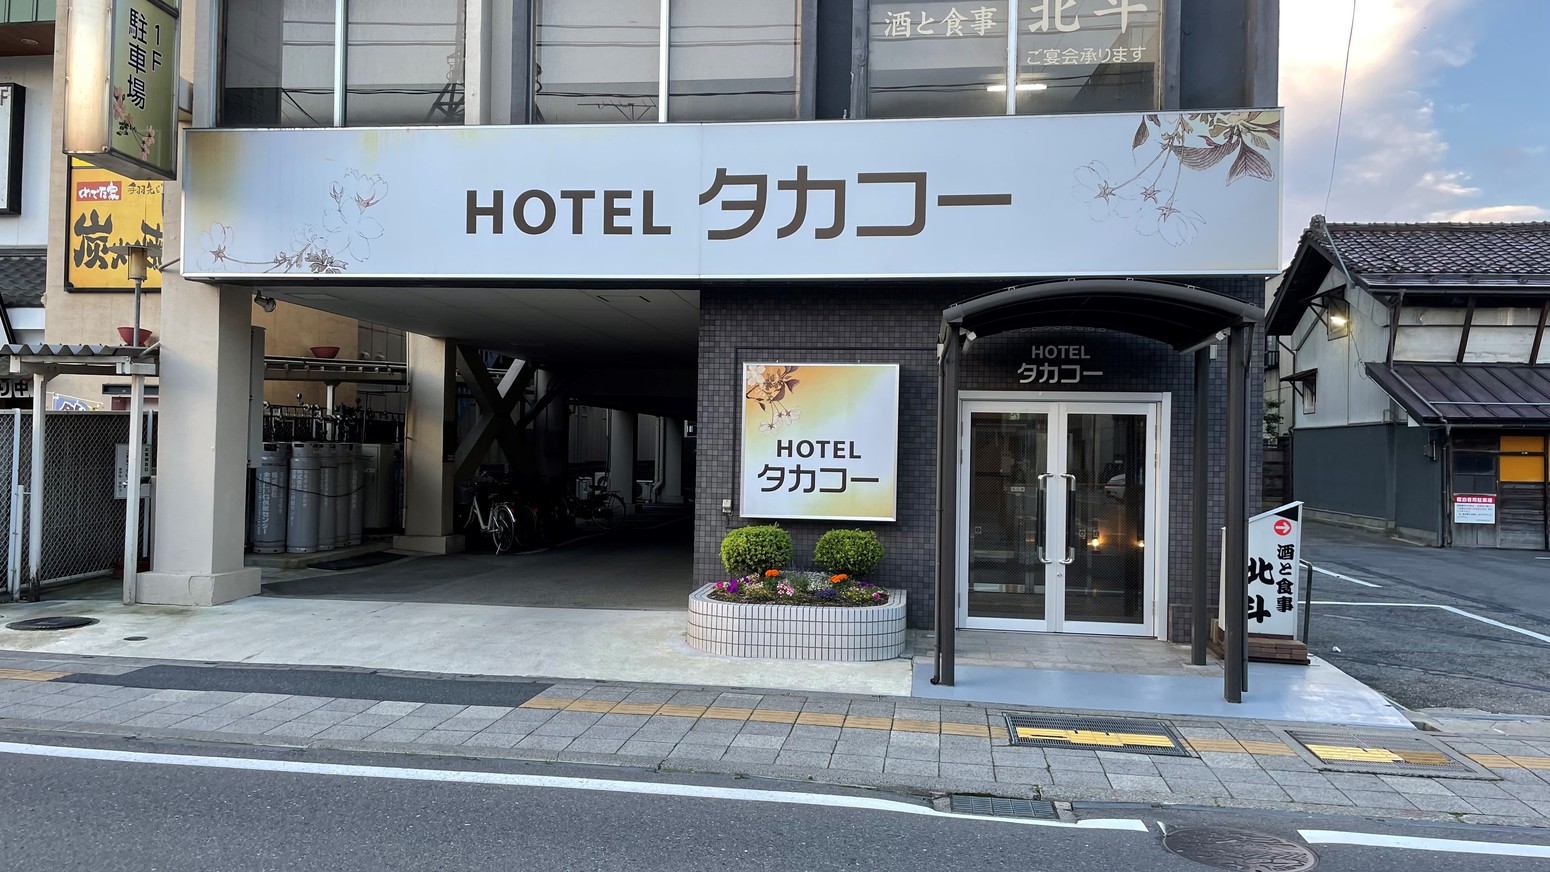 Hotel Takako